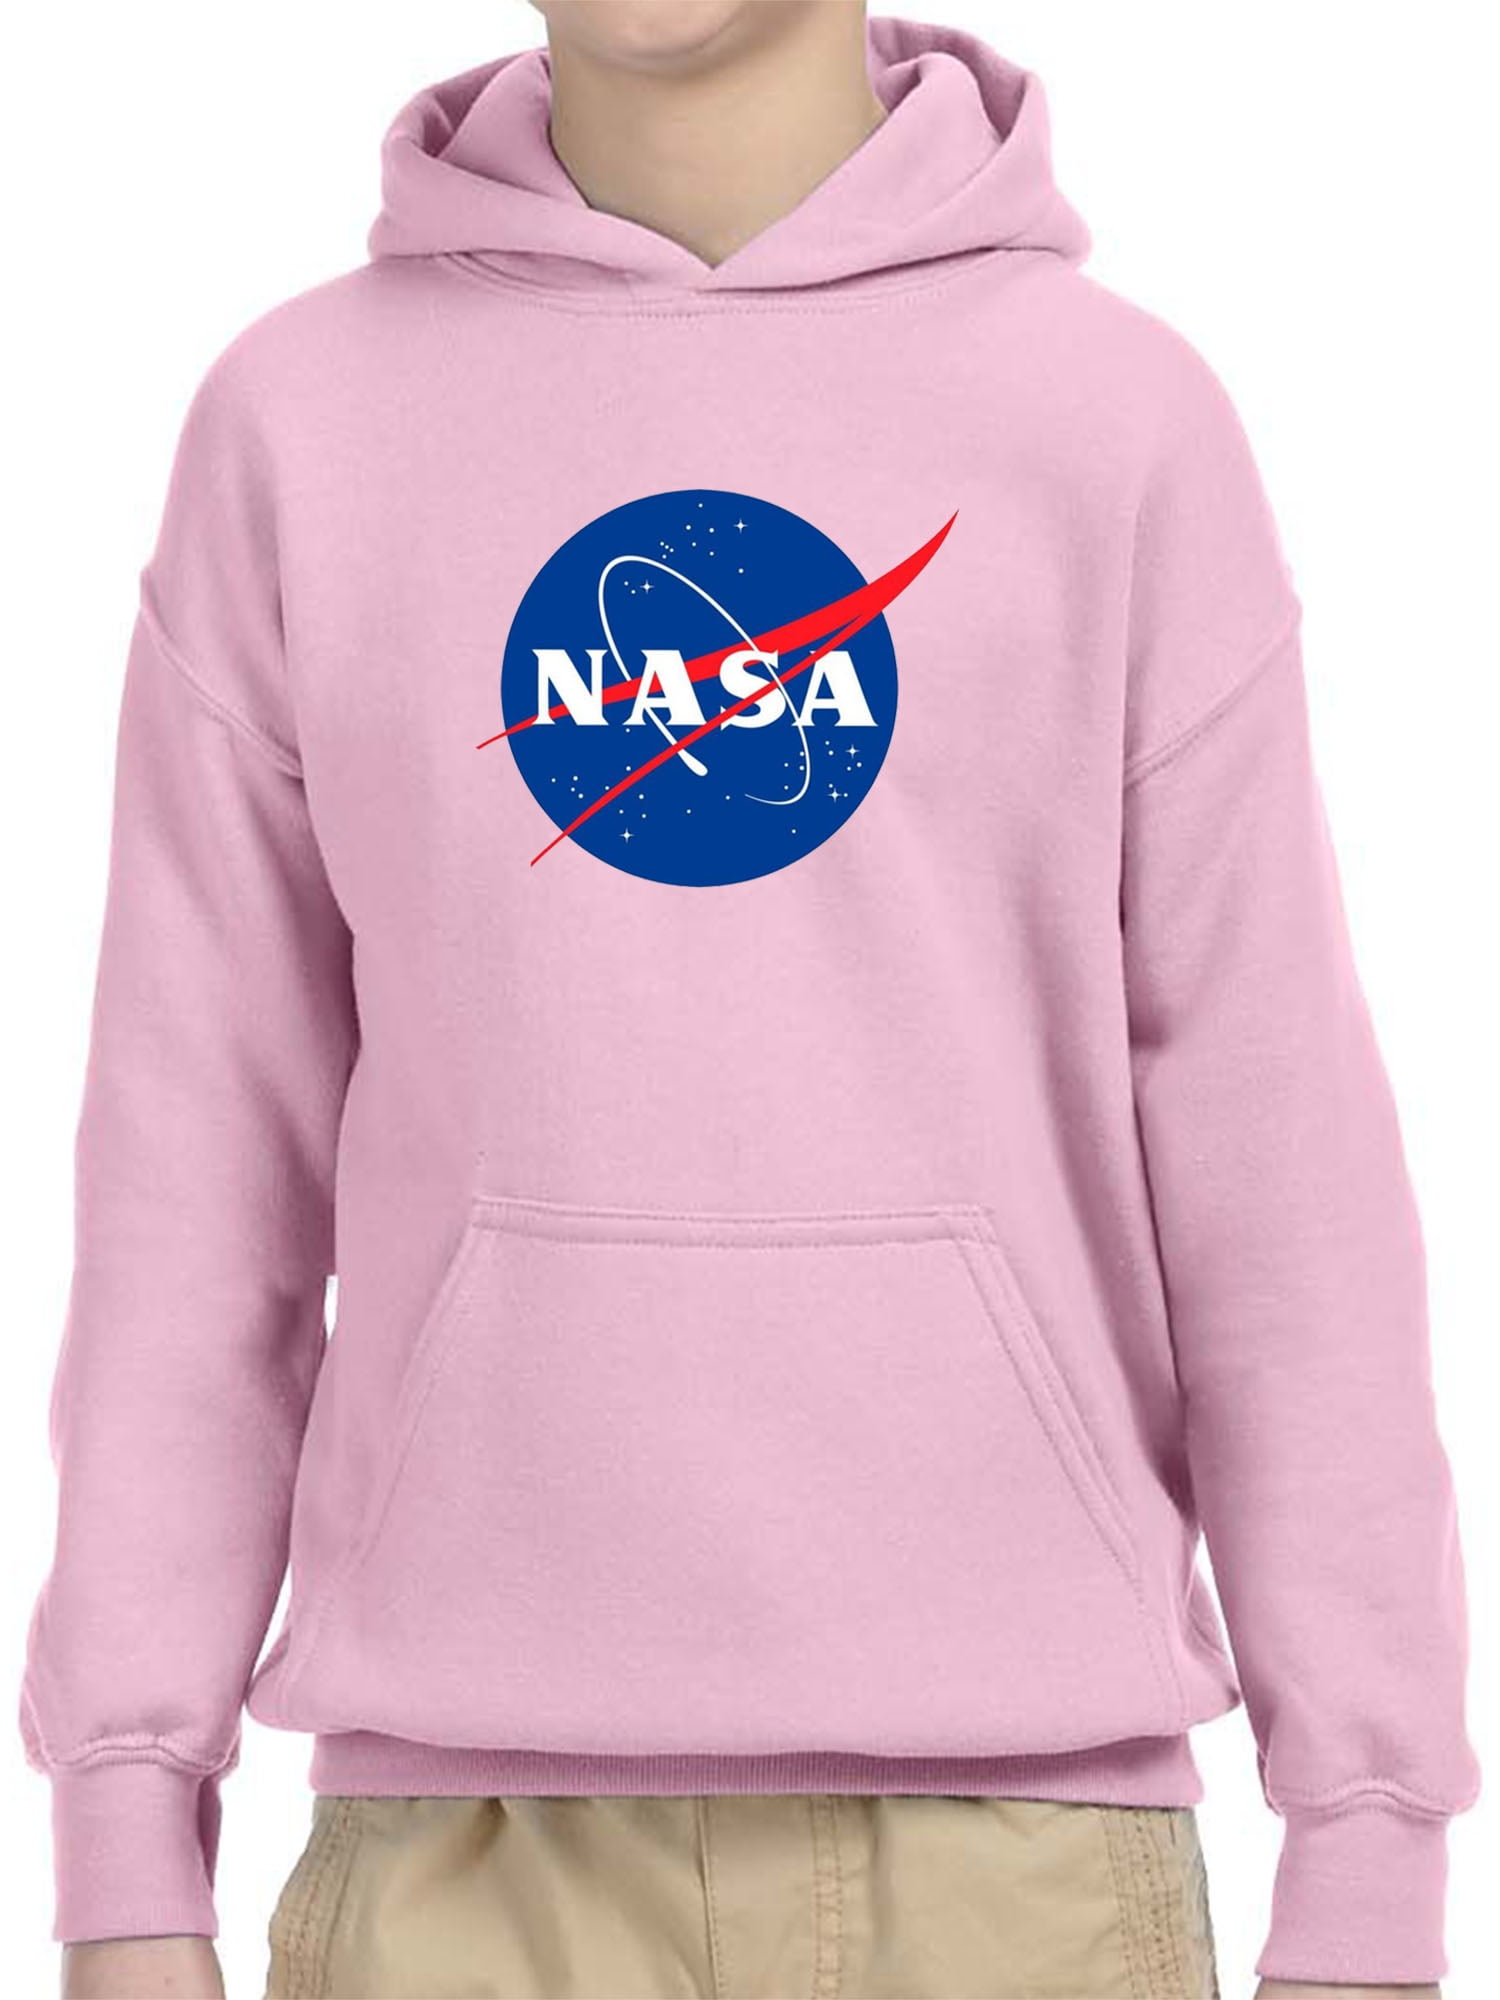 nasa pink hoodie